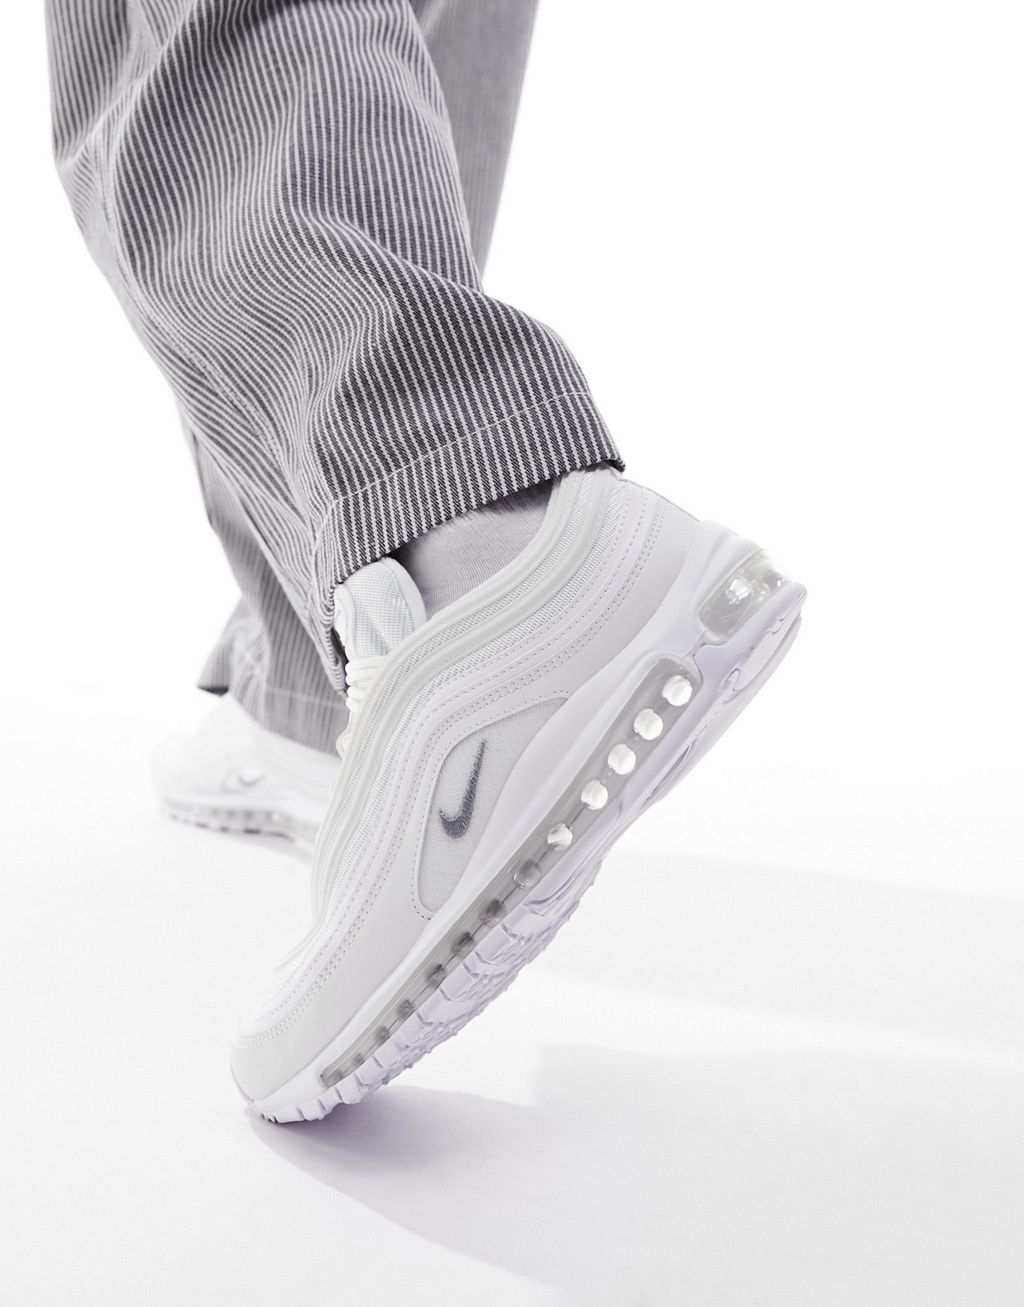 Тройные белые кроссовки Nike Air Max 97 цена и фото